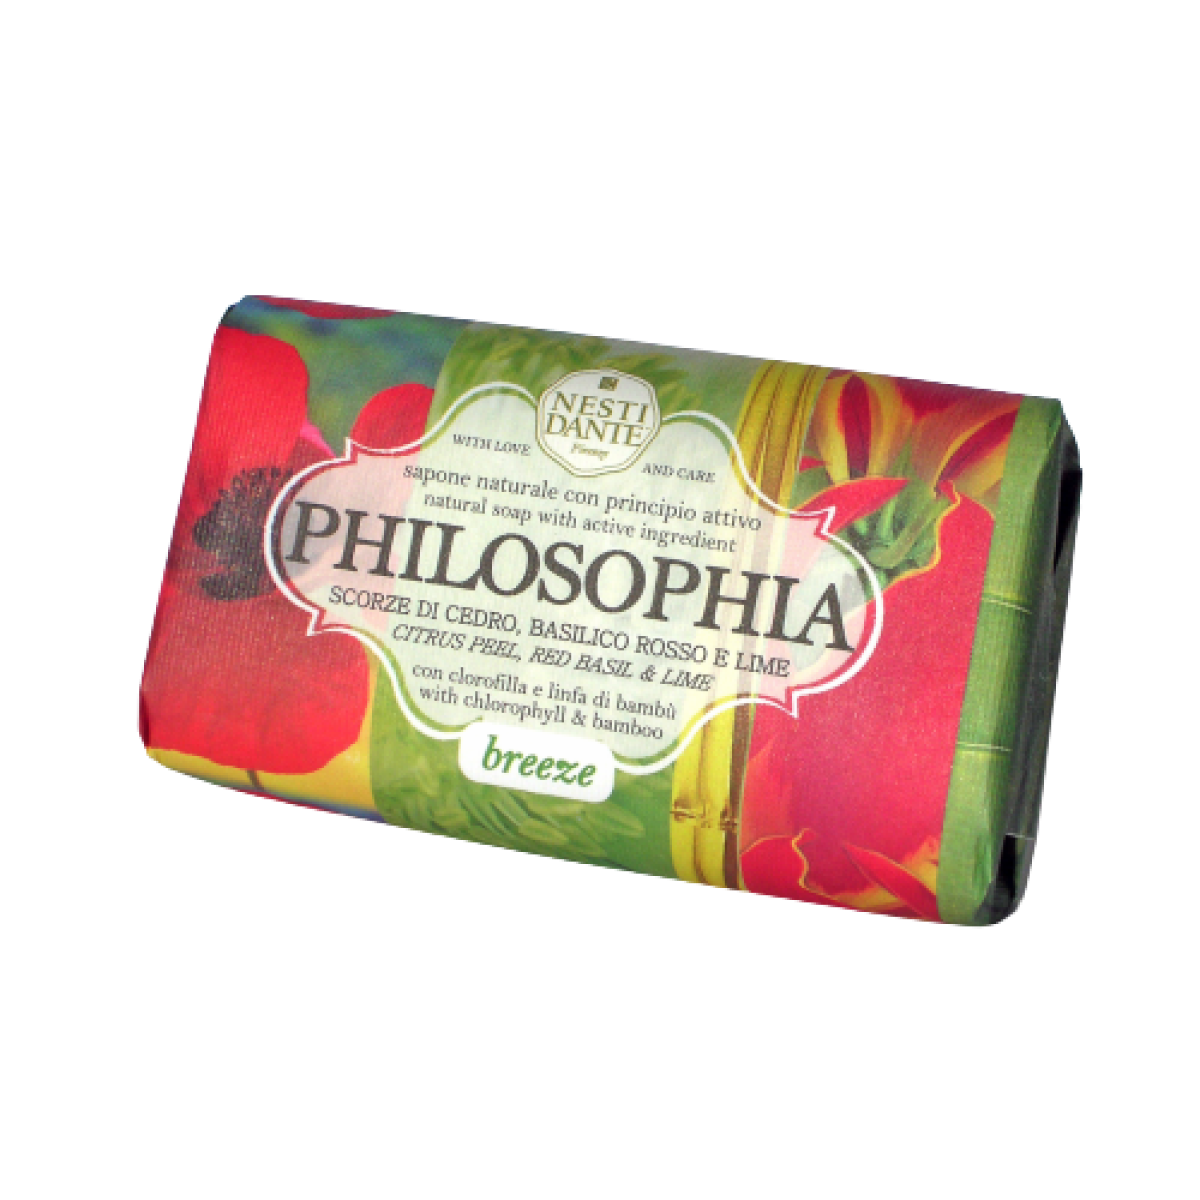 Primary Image of Philosophia Breeze Soap